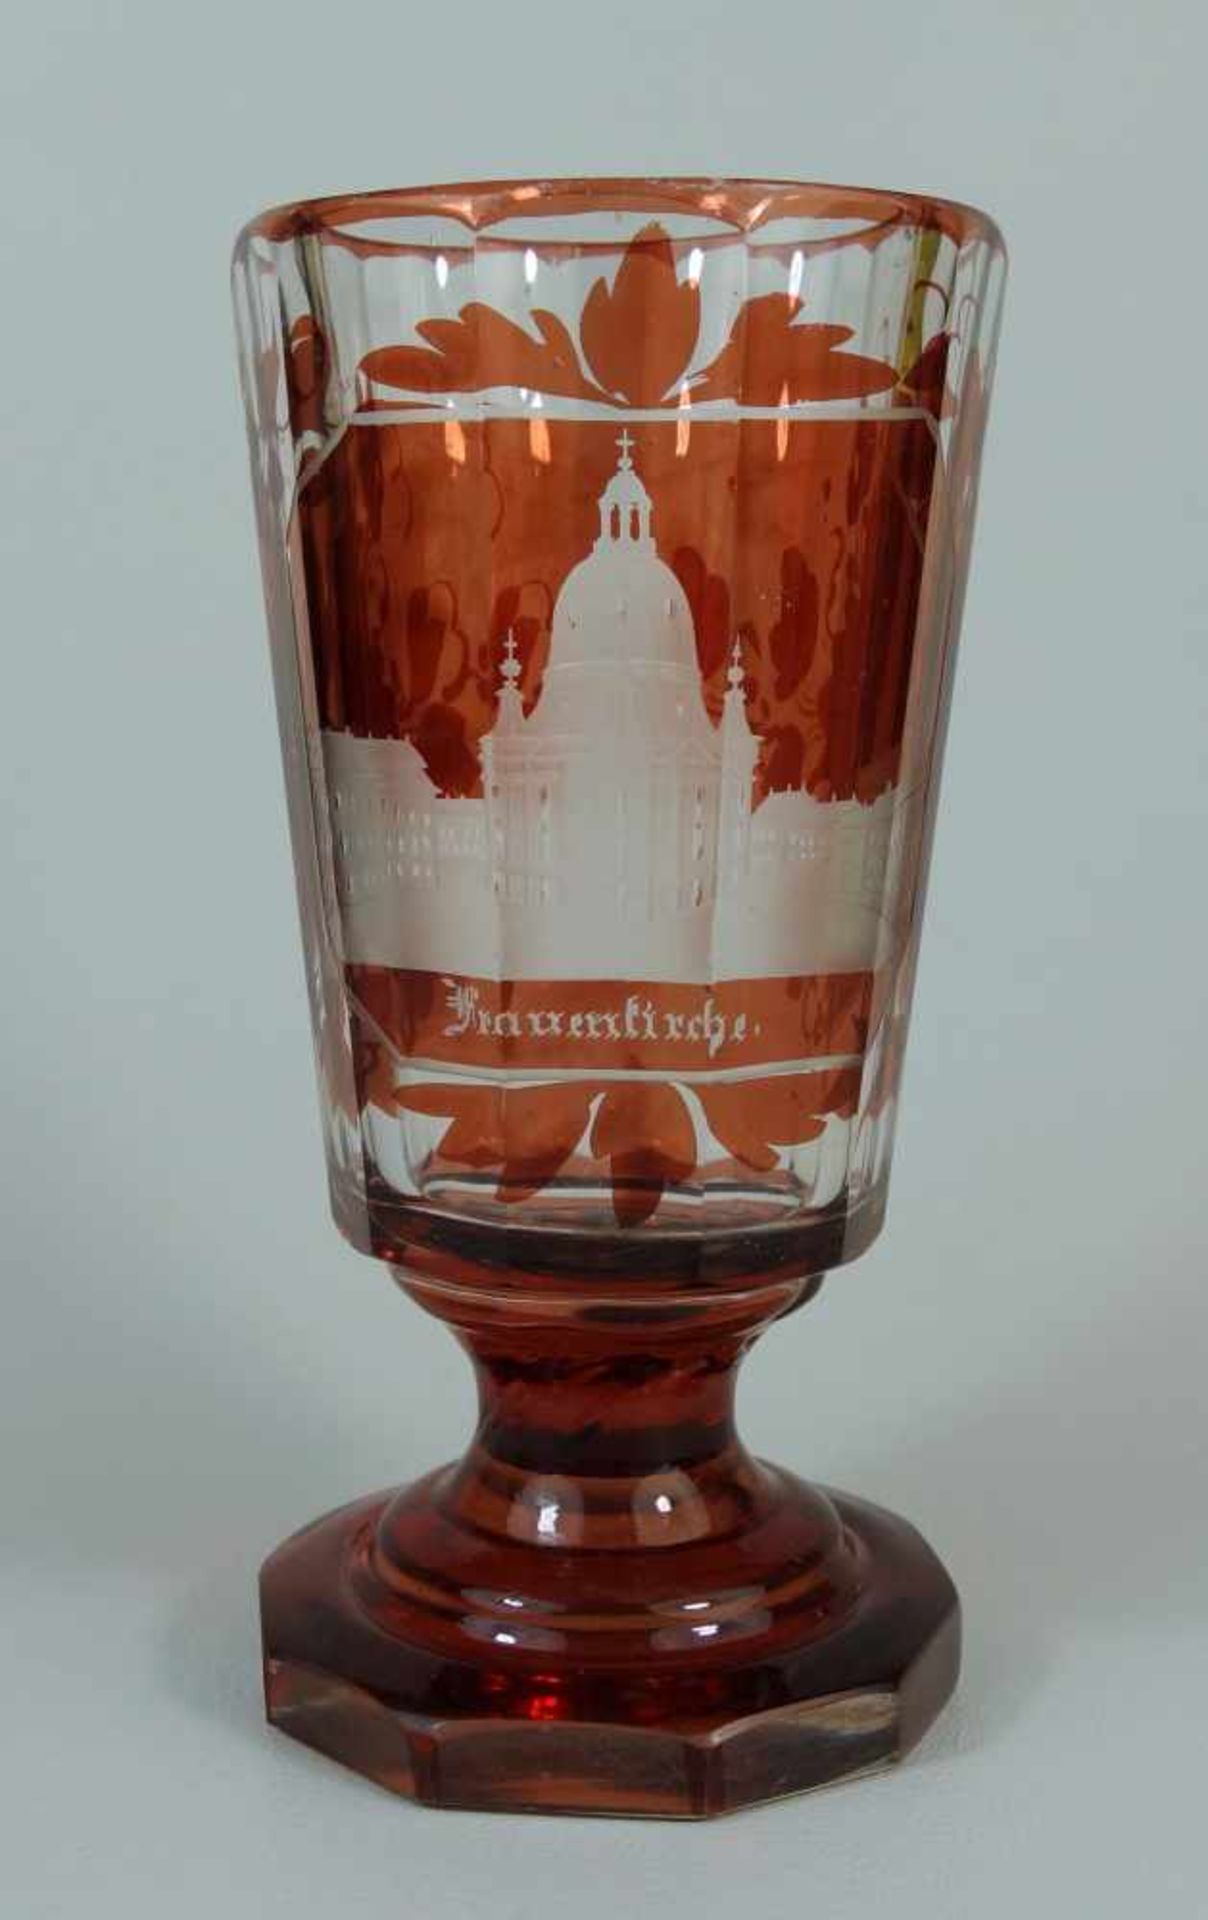 seltener Fußbecher mit Ansicht der Dresdner Frauenkirche, um 1850/60farbloses Kristallglas mit